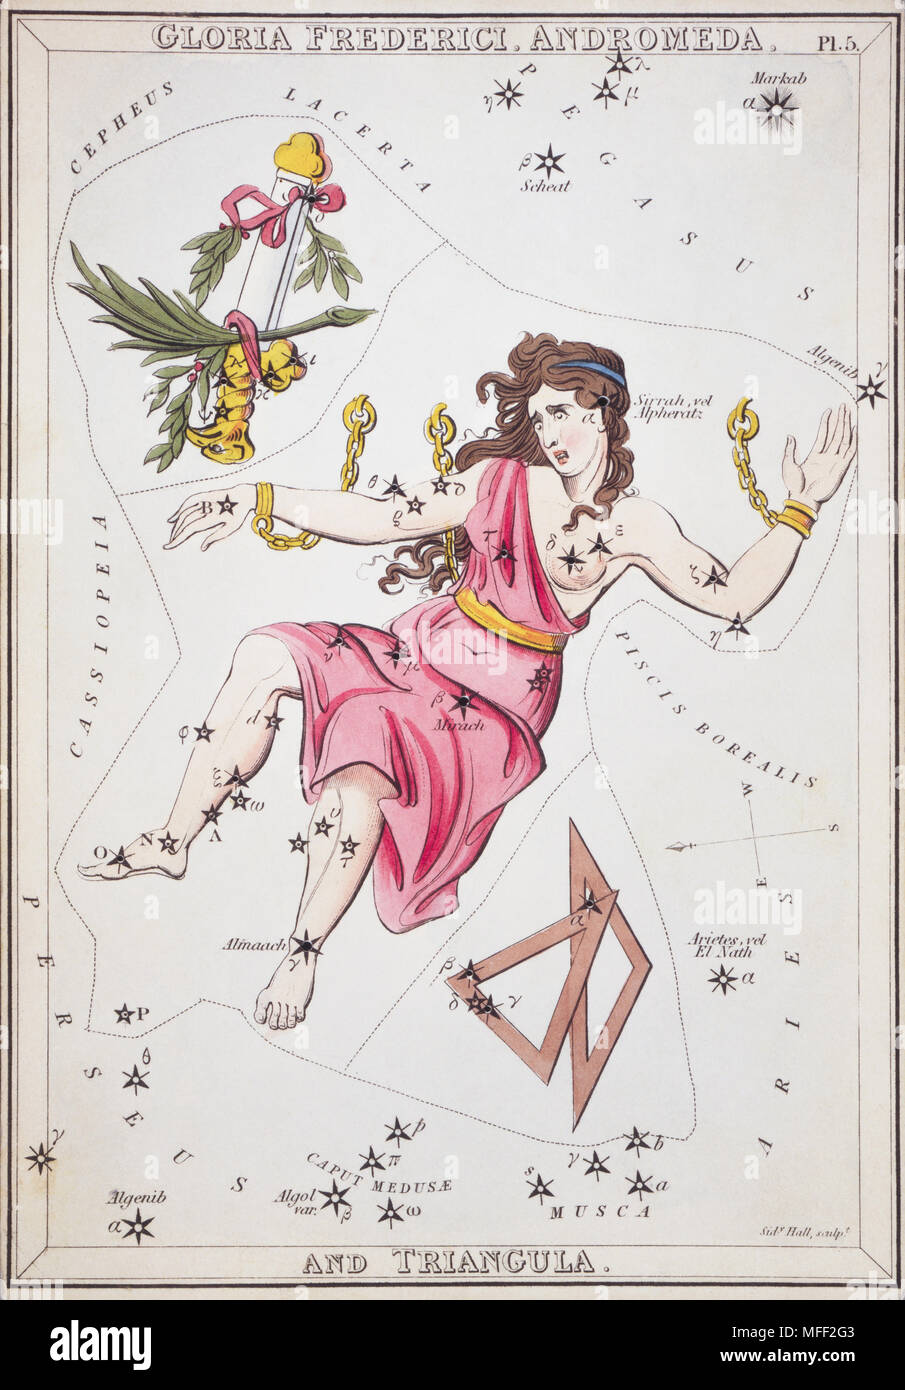 Gloria Frederici, Andromeda und Triangula. Karte Nr. 5 von Urania's Mirror, oder einen Blick auf den Himmel, eines der 32 astronomischen Star Chart Karten von Sidney Hall graviert und publshed 1824. Stockfoto